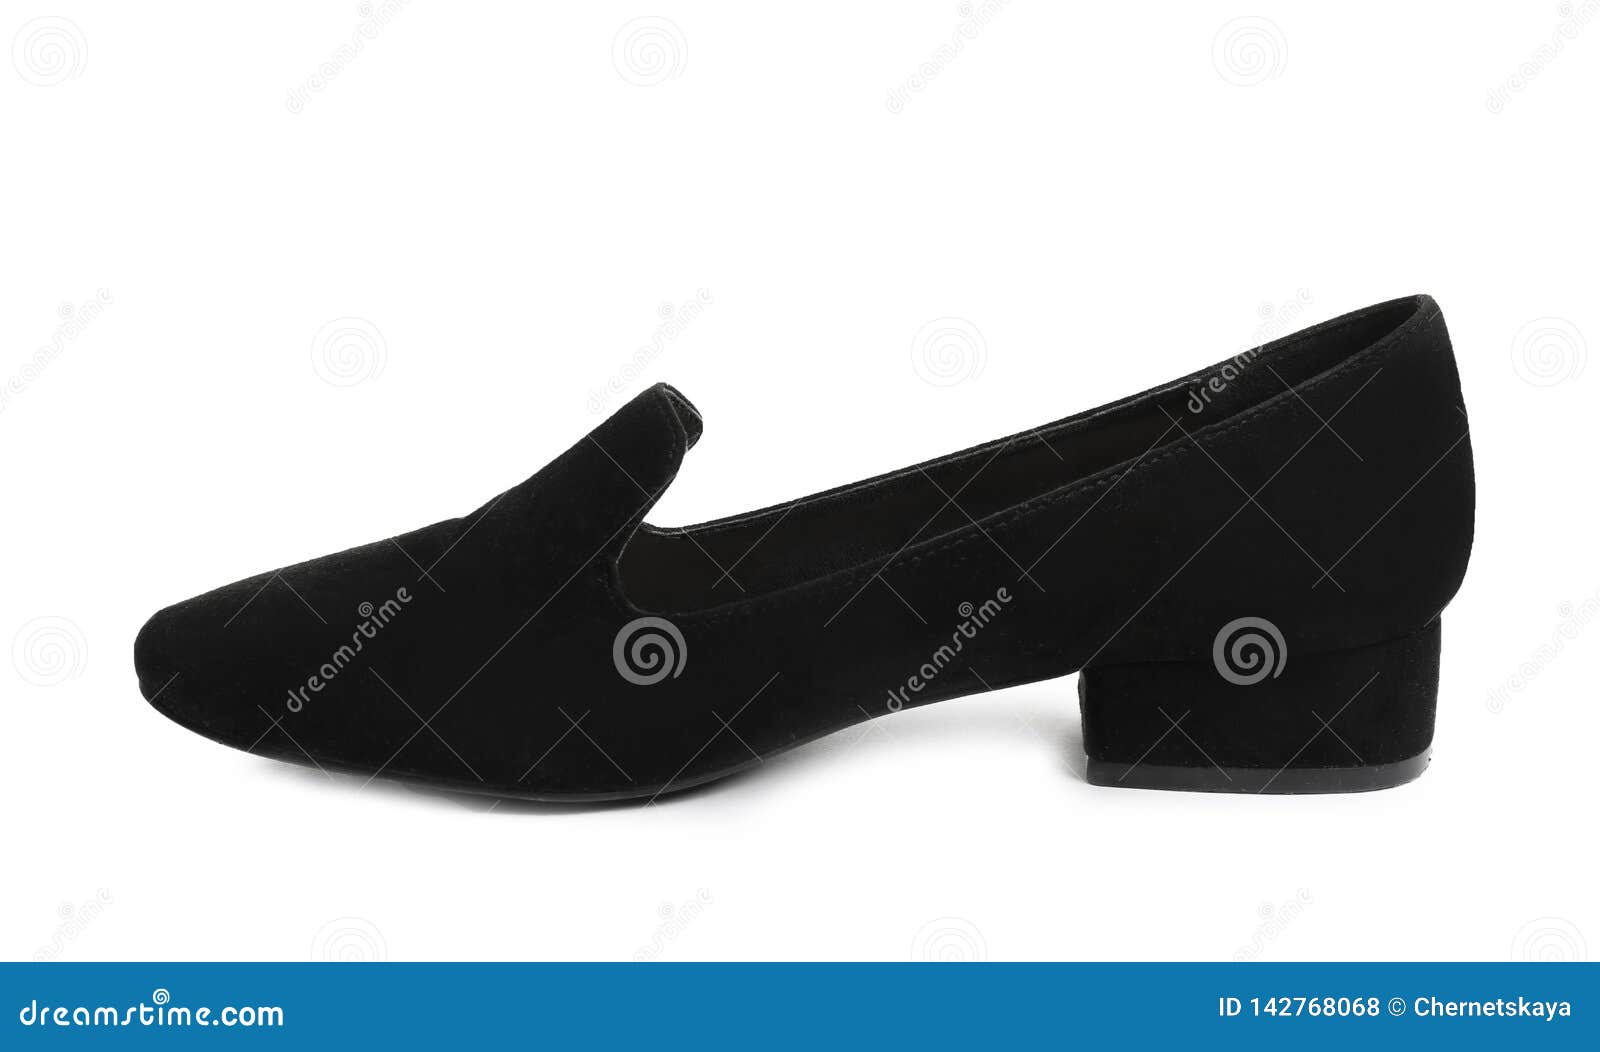 Stylish Female Shoe on White Background Stock Photo - Image of heel ...